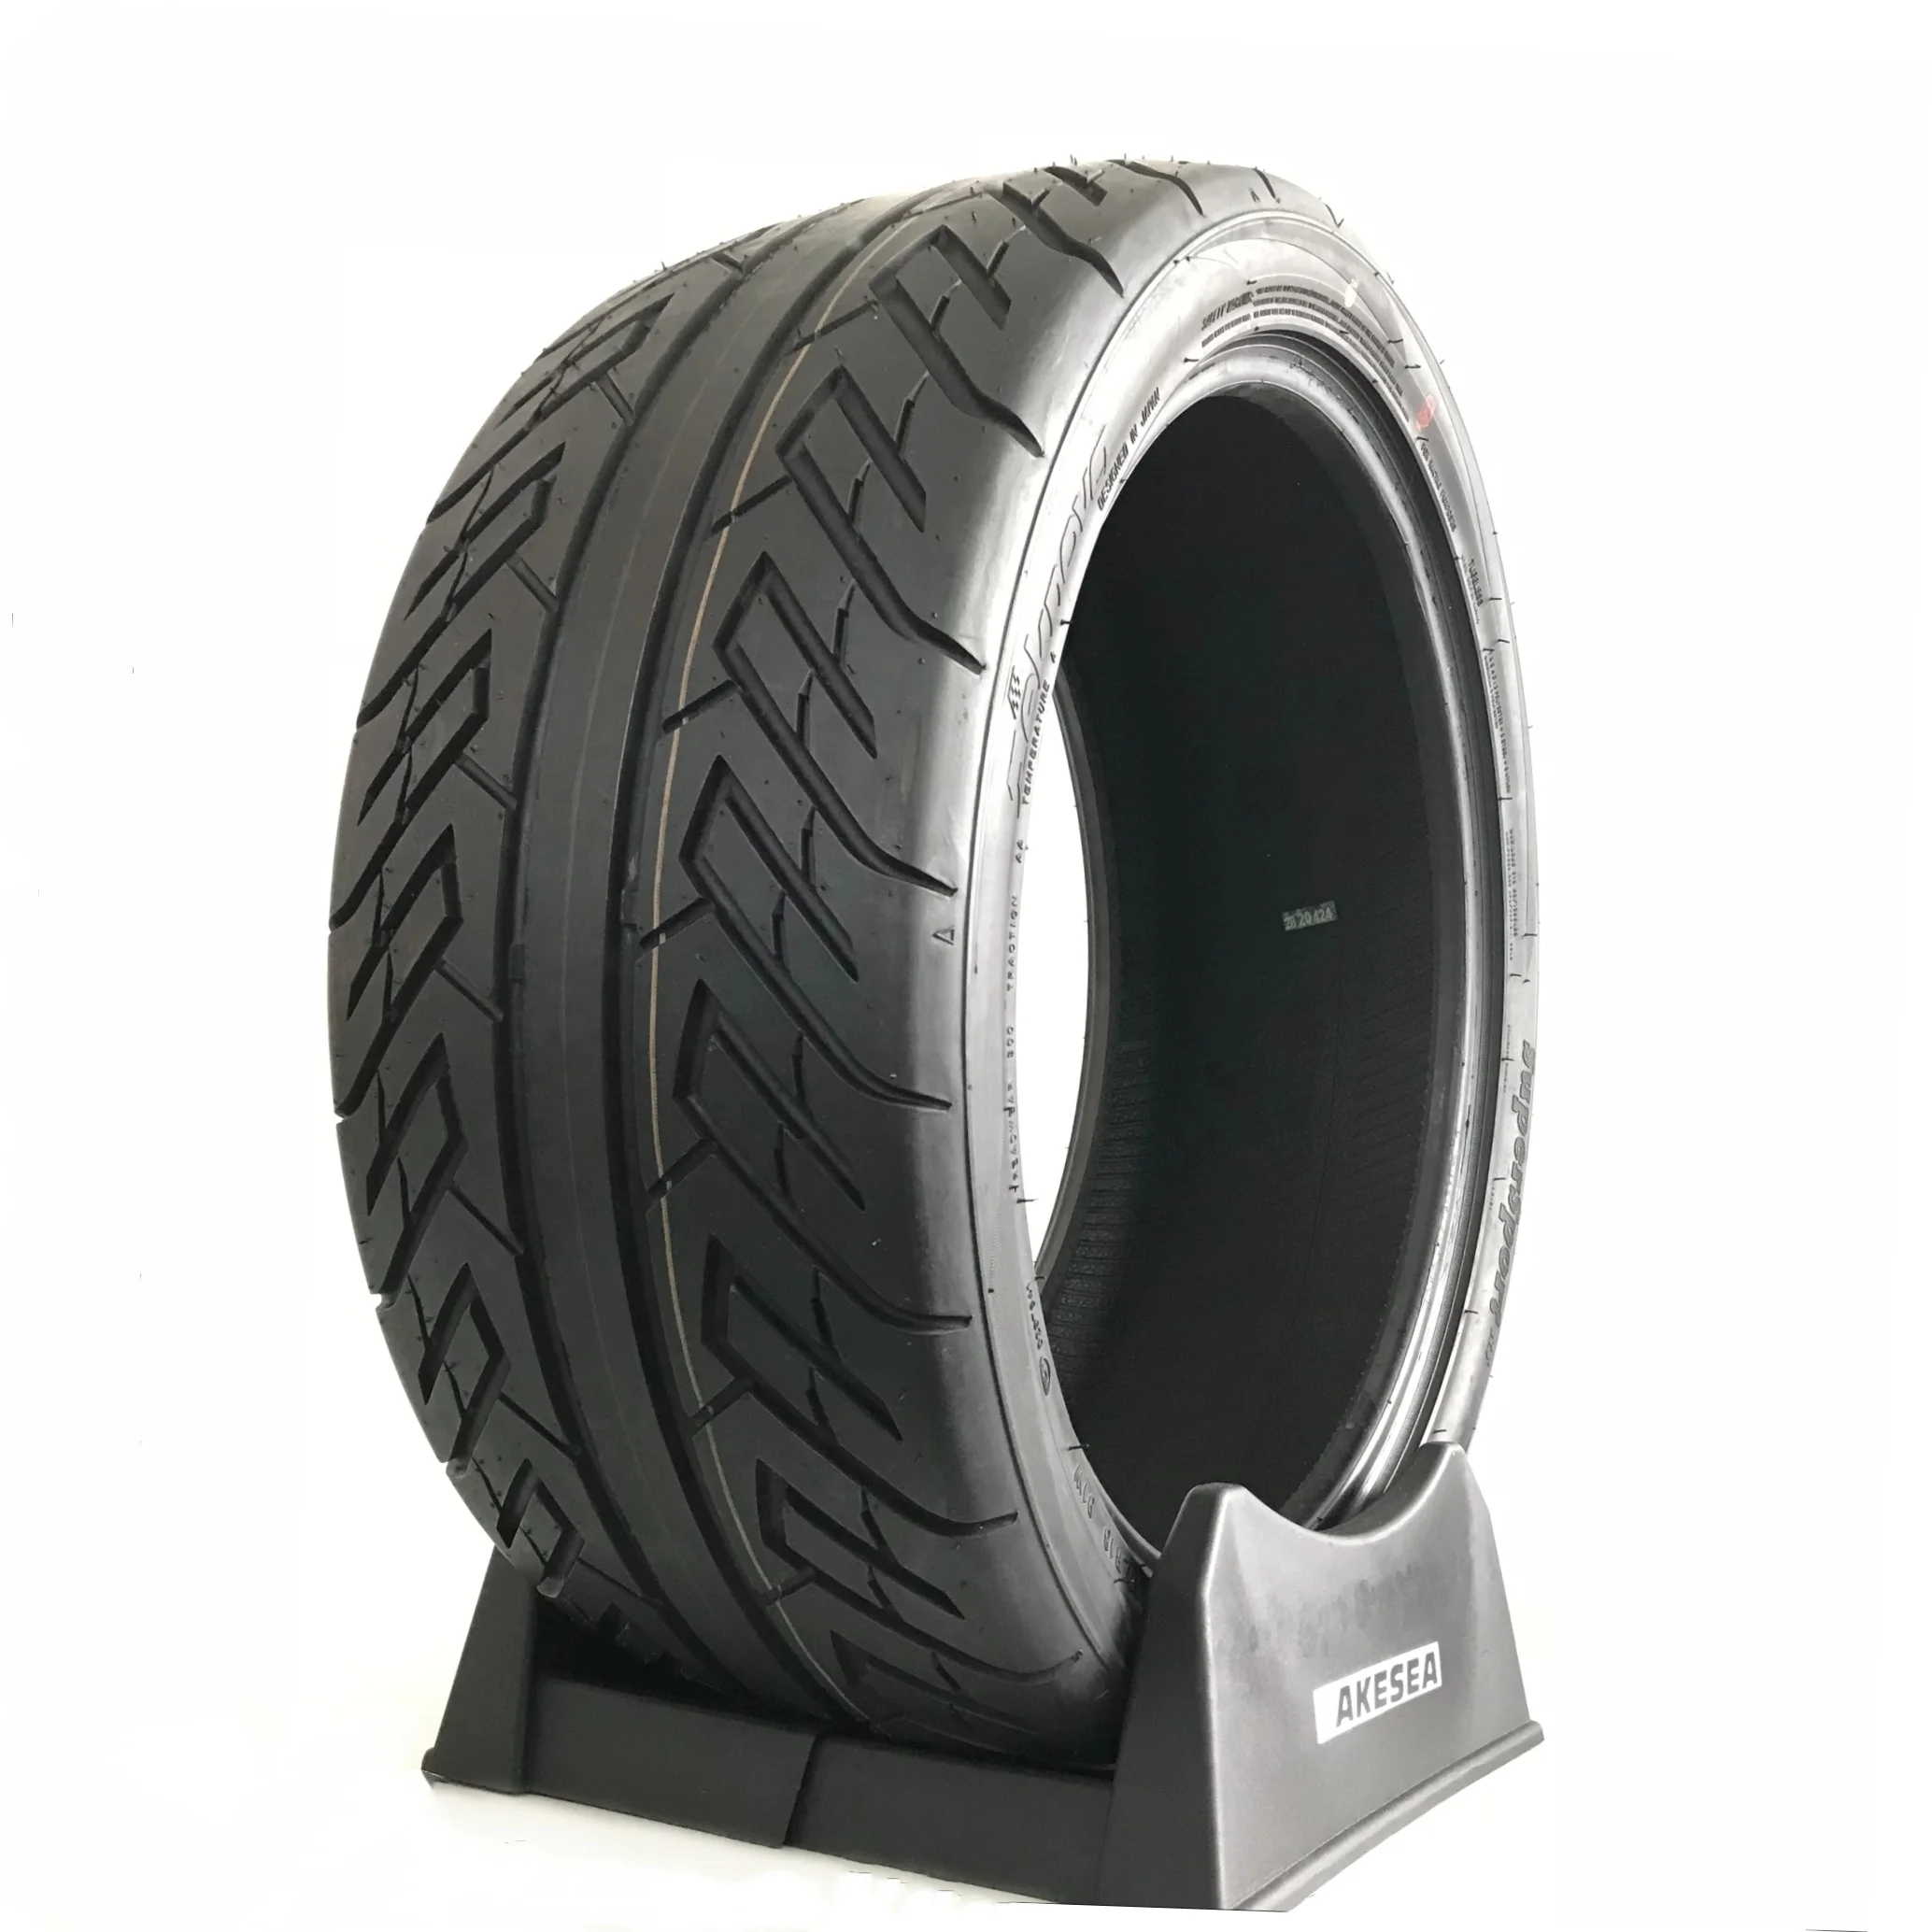 lakesea semi slick 215/45/17/235 45 17drifting tires